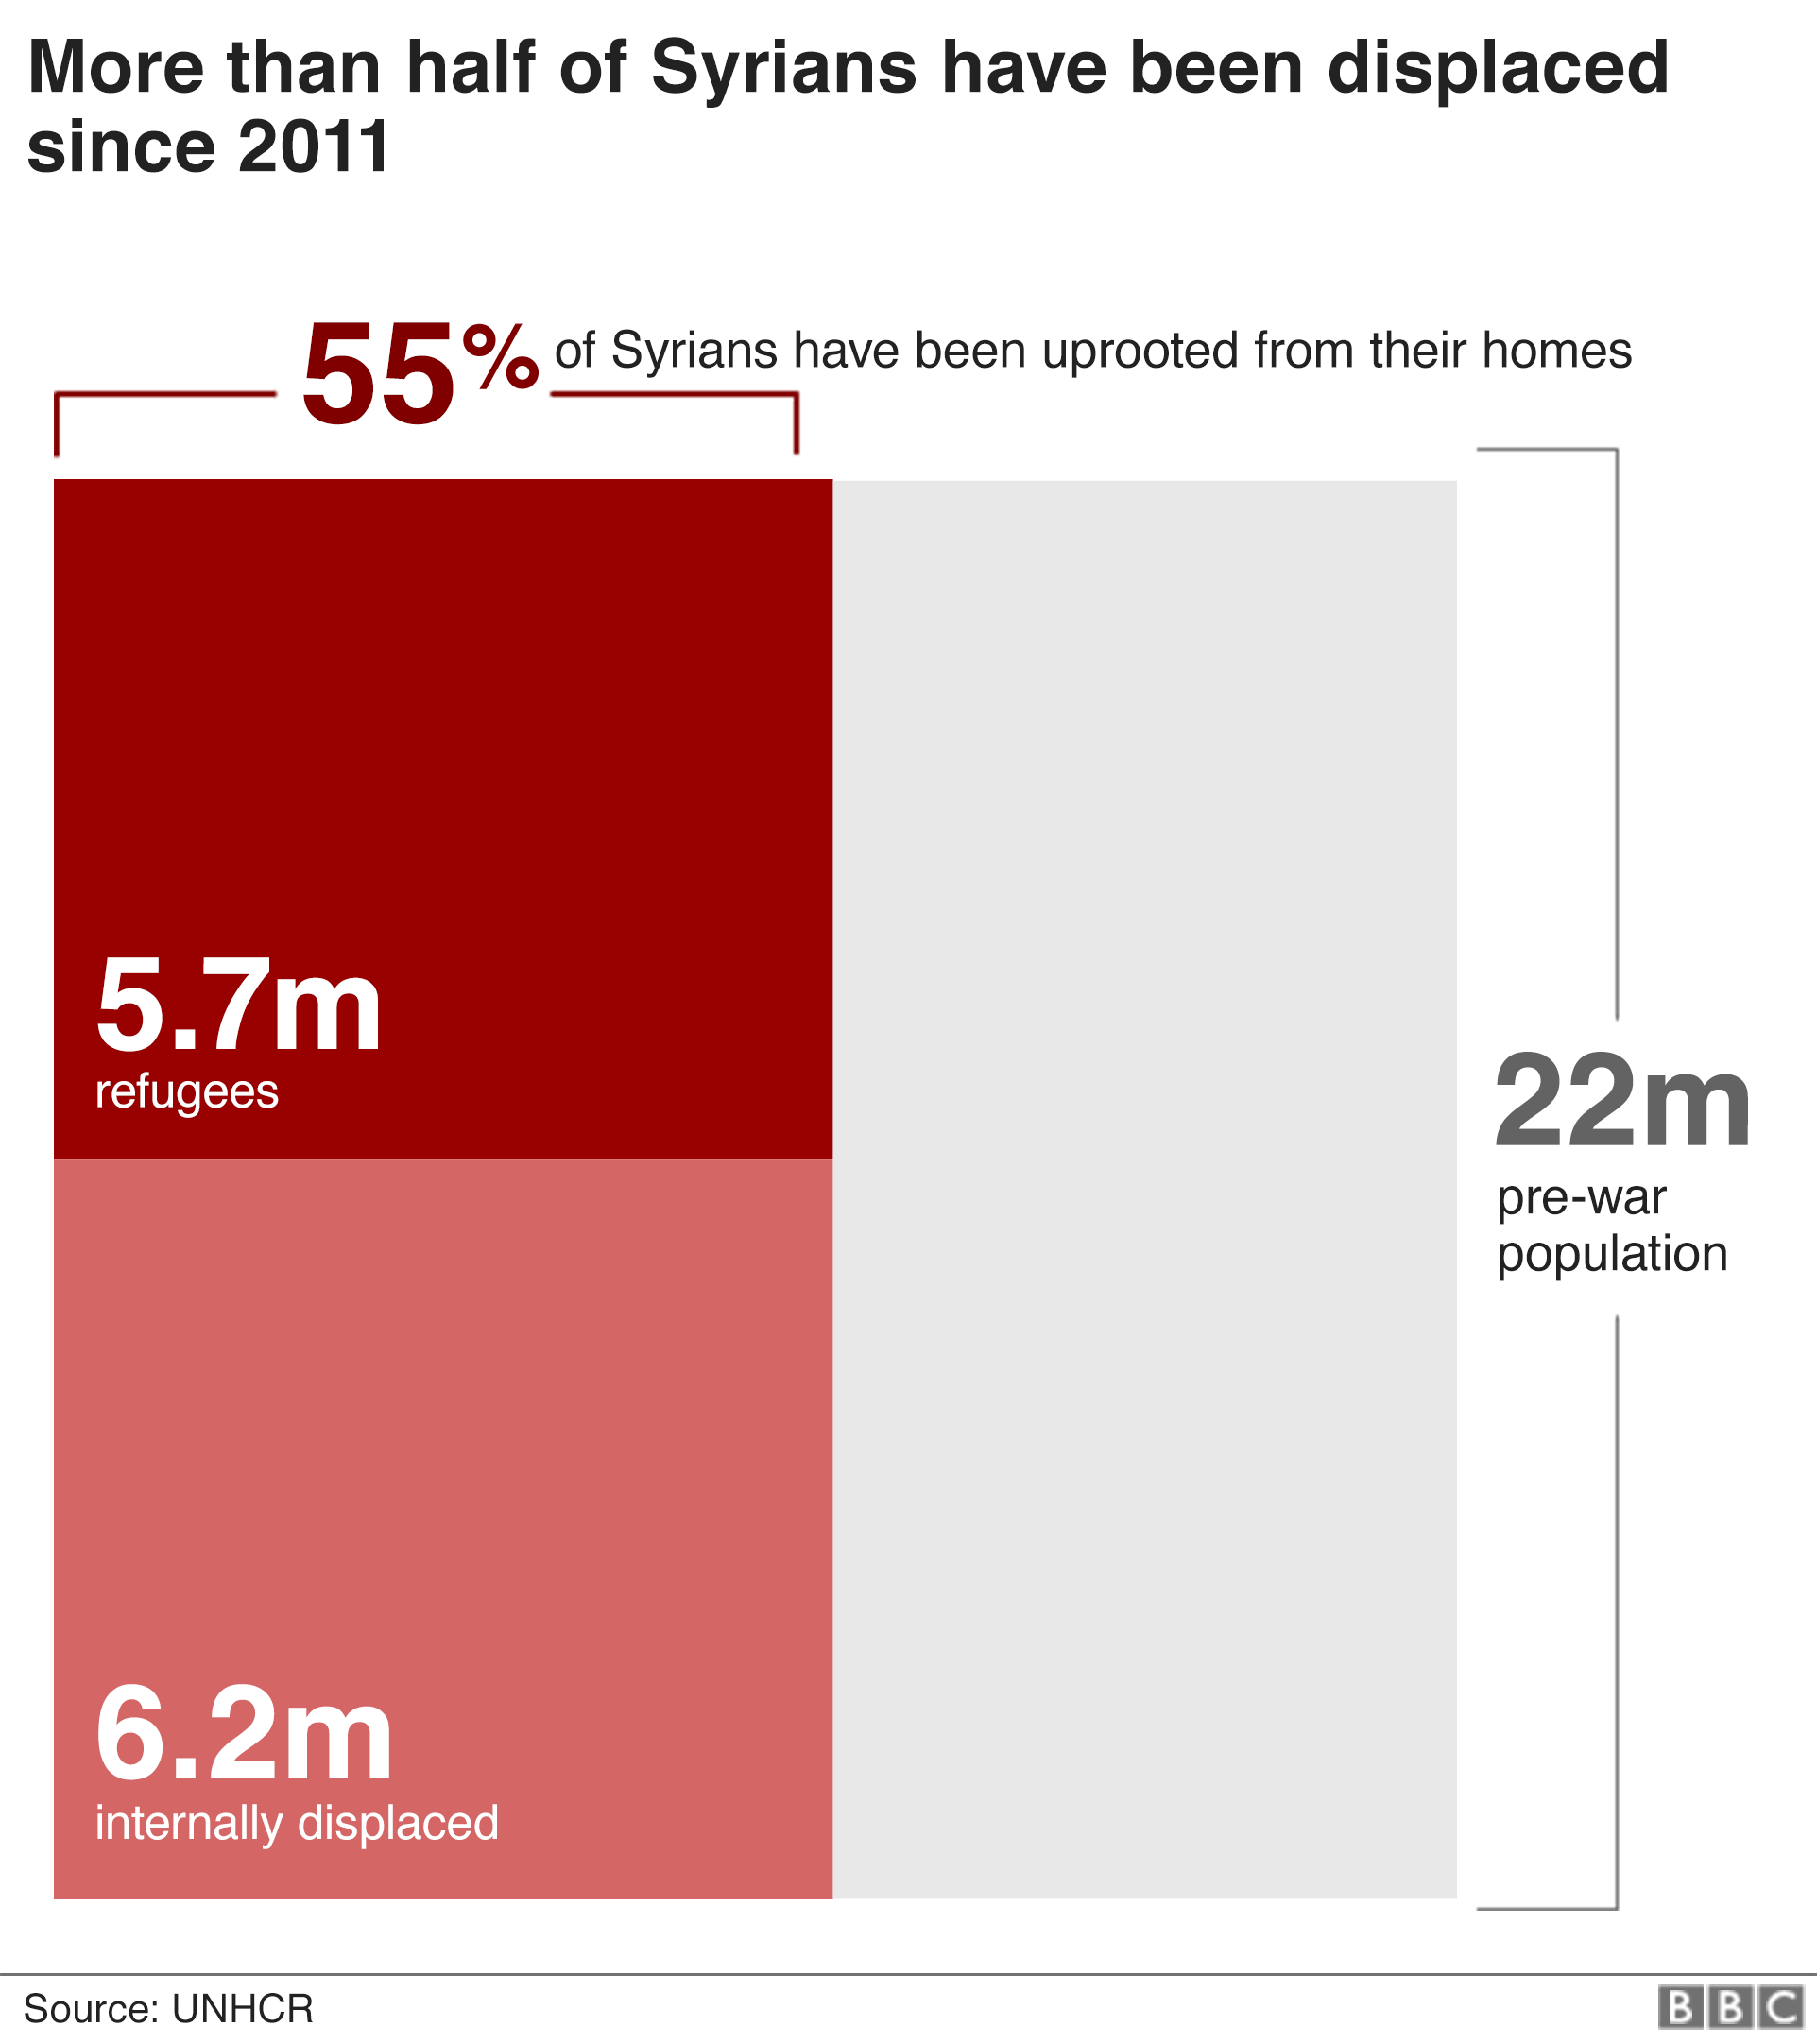 Диаграмма, показывающая, что 55% сирийцев были изгнаны из своих домов